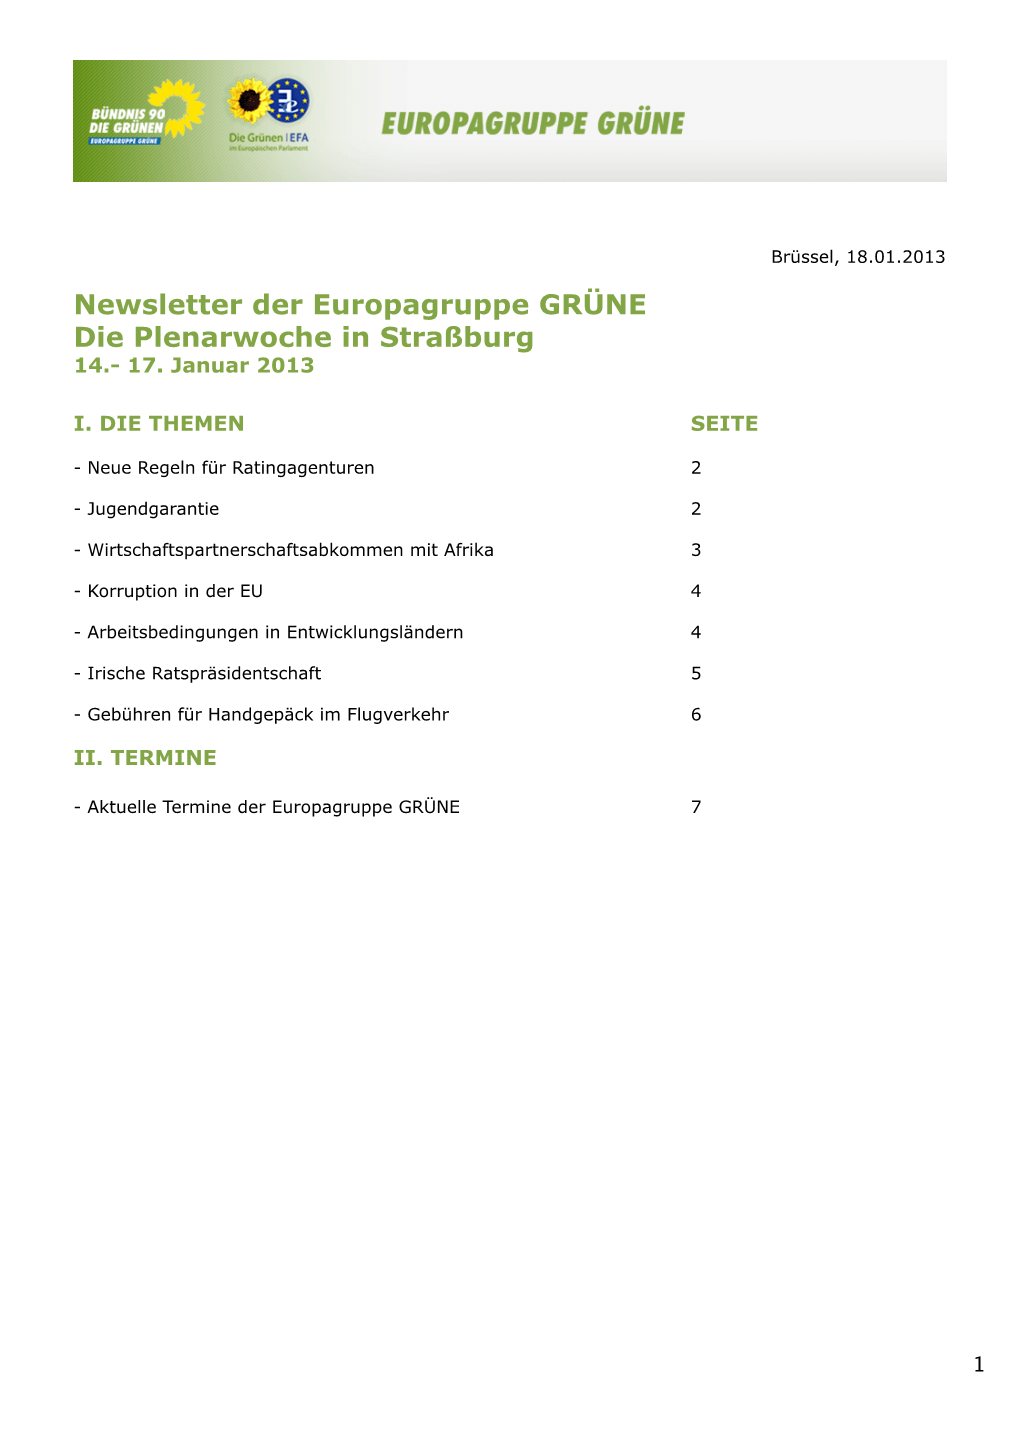 Newsletter Der Europagruppe GRÜNE Die Plenarwoche in Straßburg 14.- 17